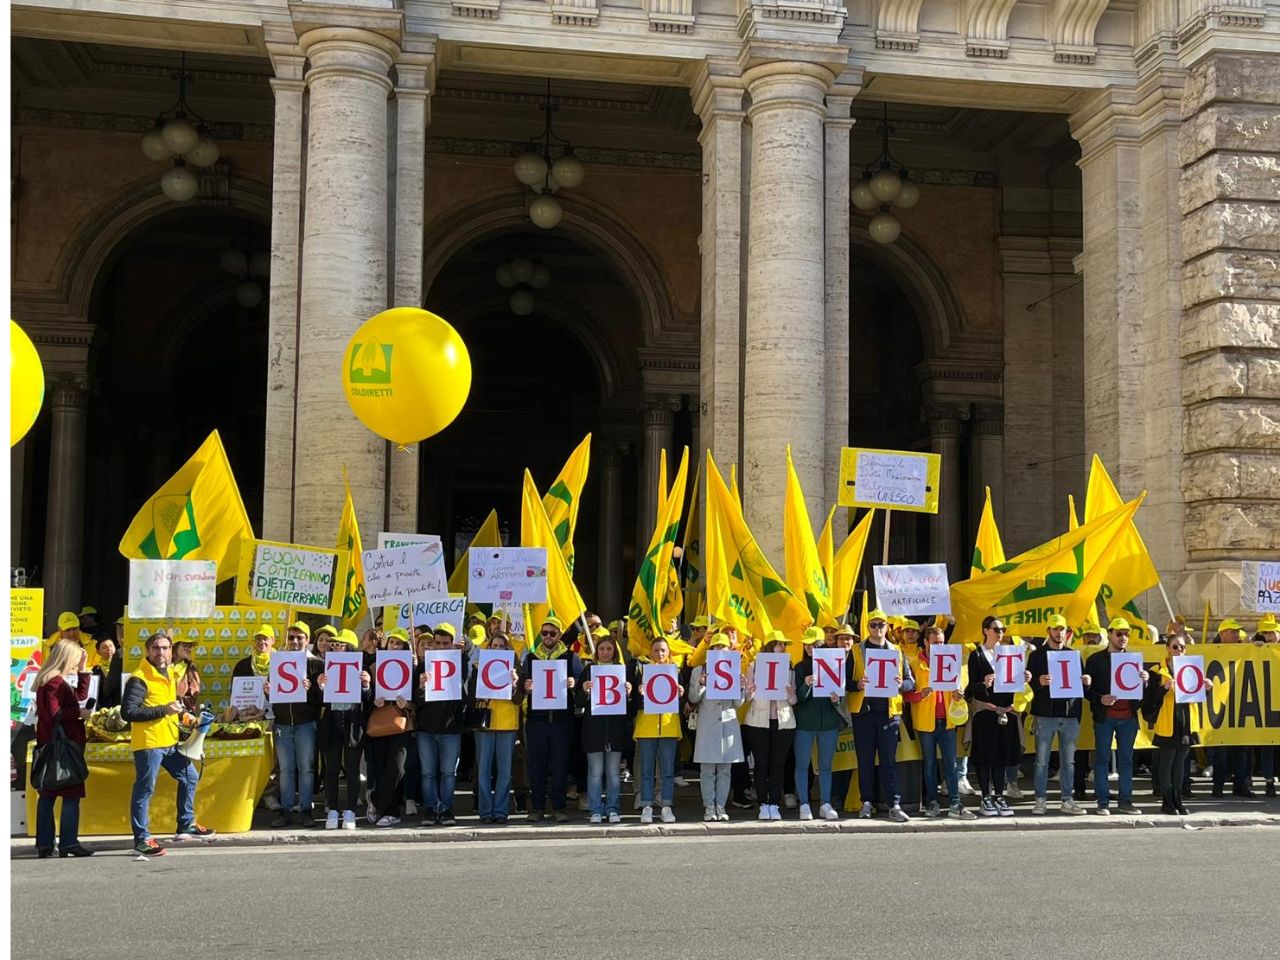 Anche i giovani agricoltori delle Marche a Roma per festeggiare la legge contro il cibo sintetico